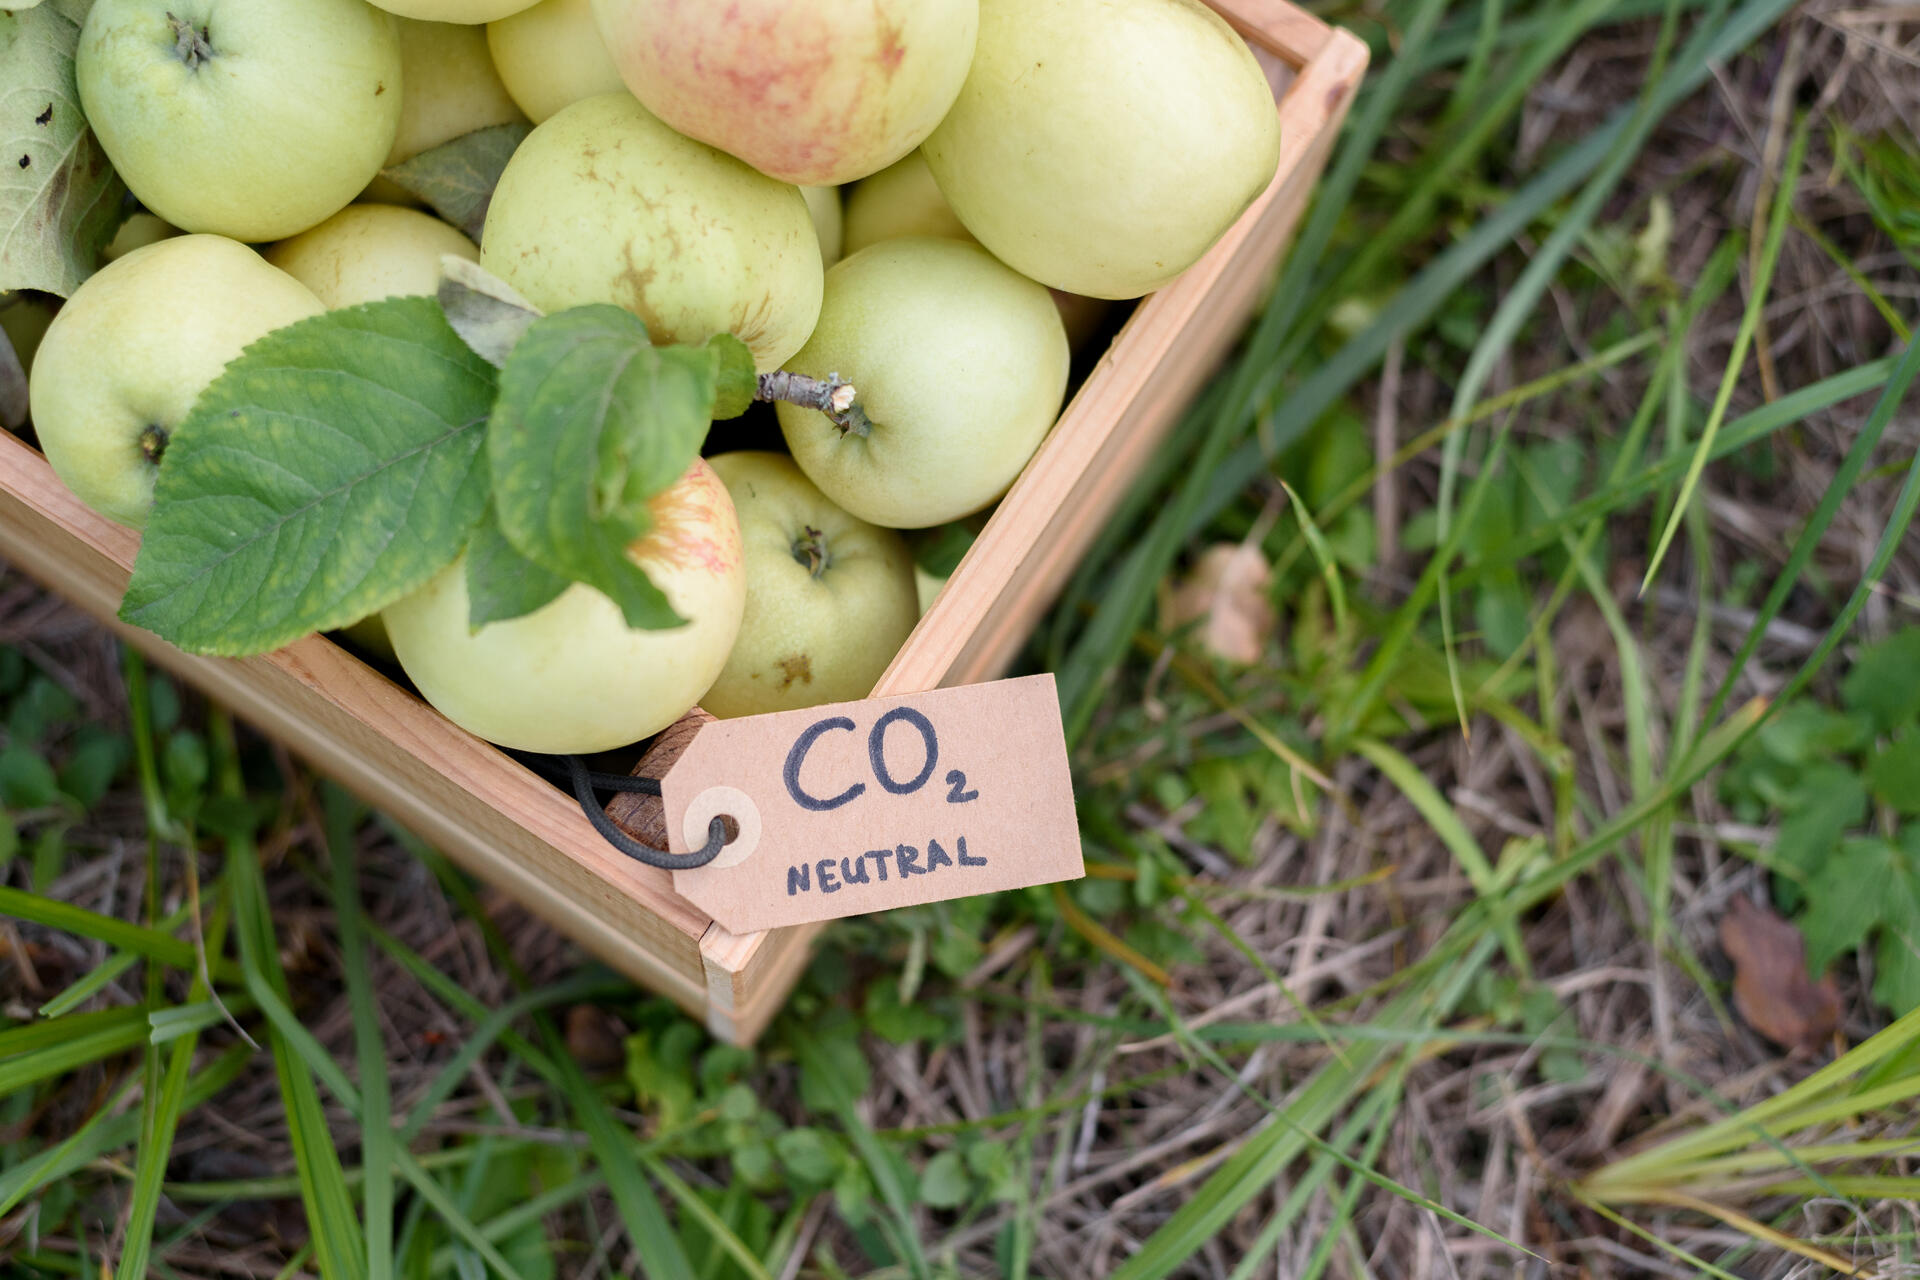 Ածխածնի հավաքում և պահպանում. «տեղական» խնձորներ՝ ածխածնի չեզոքության պիտակով